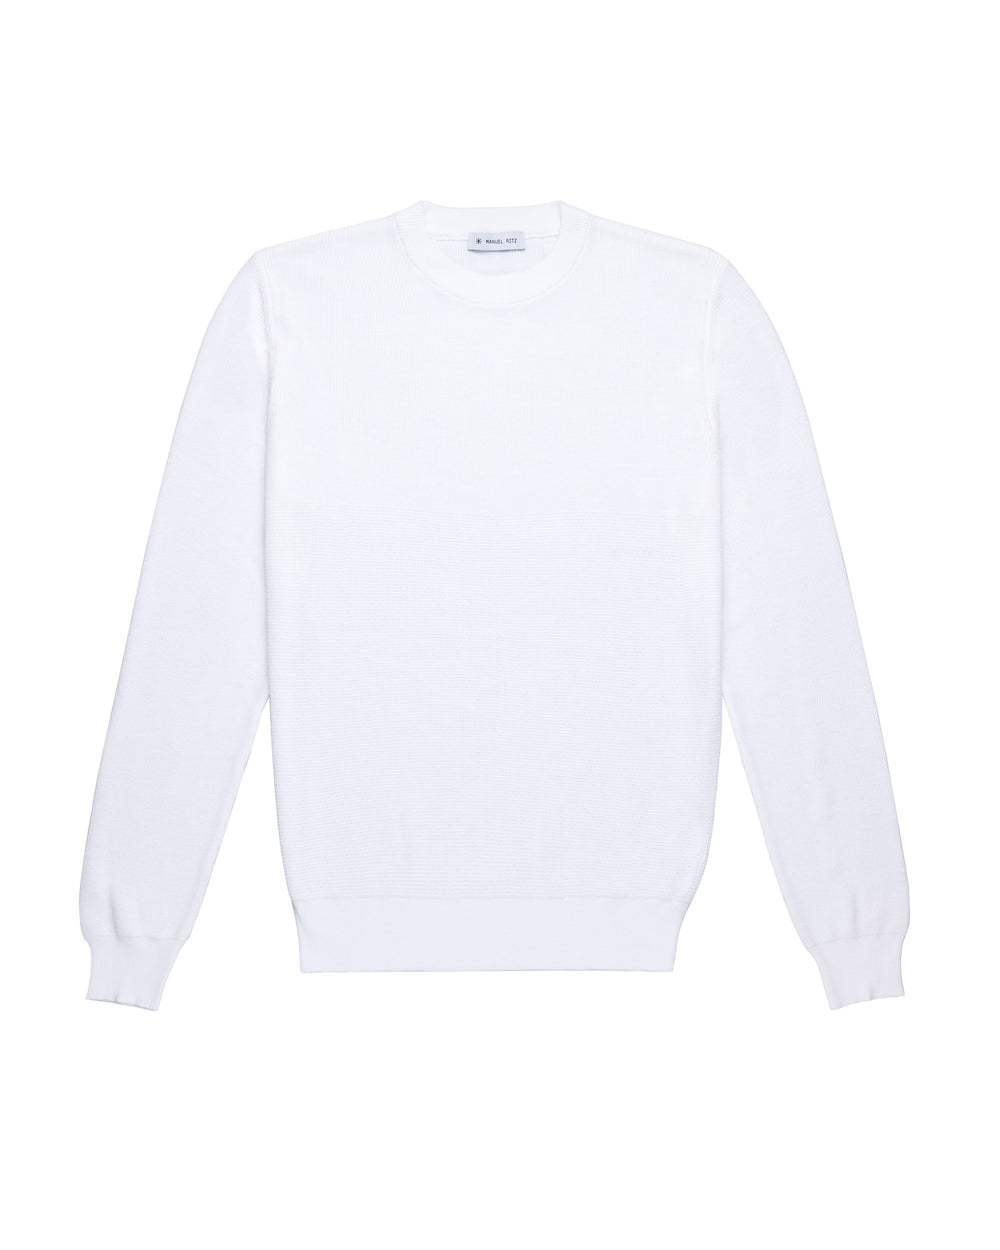 white crew-neck sweater cotton crepe stitch mix